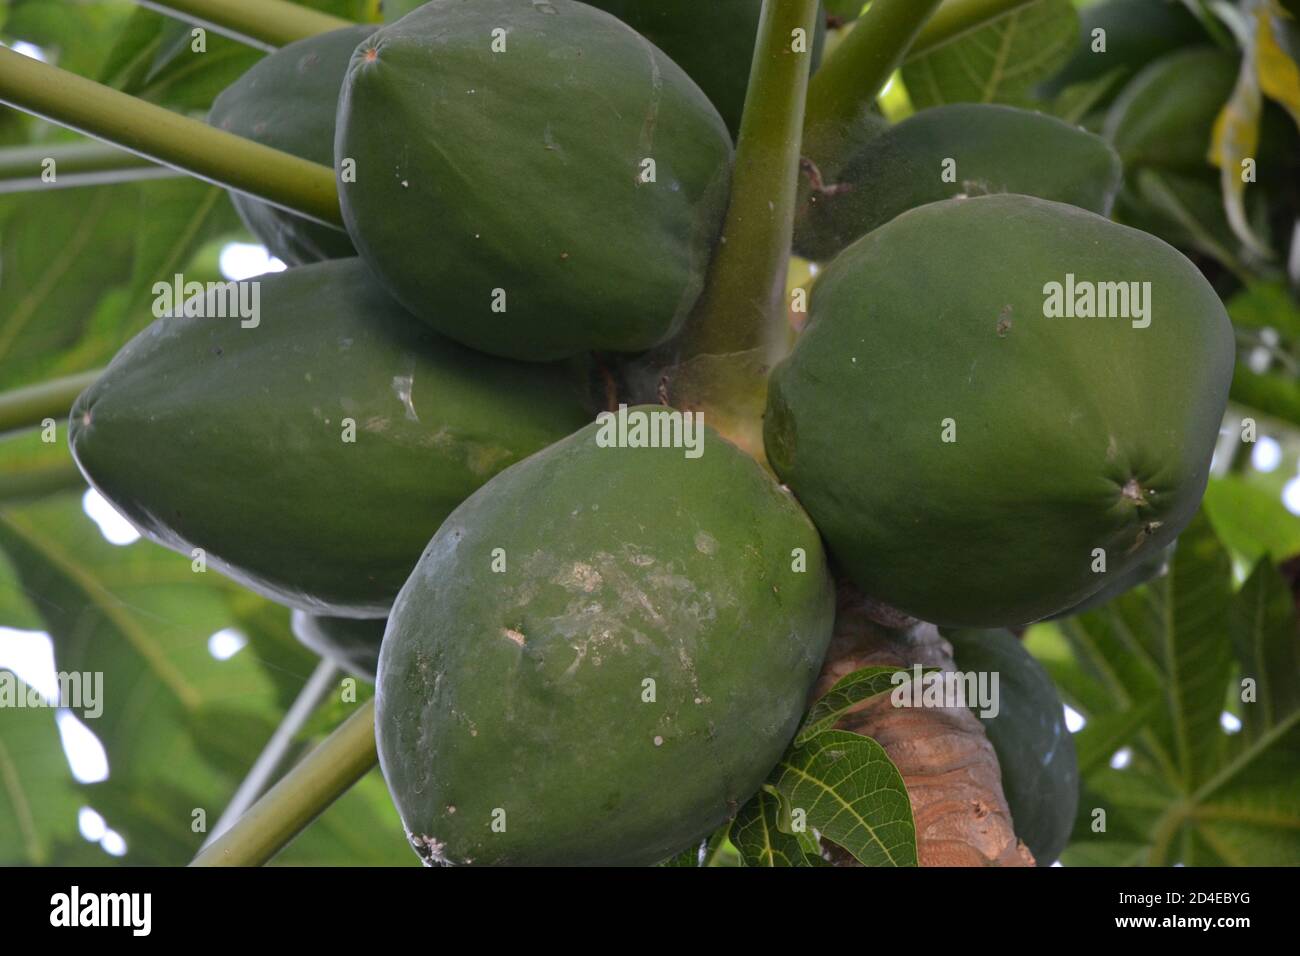 Green raw papaya fruits in its tree. Stock Photo